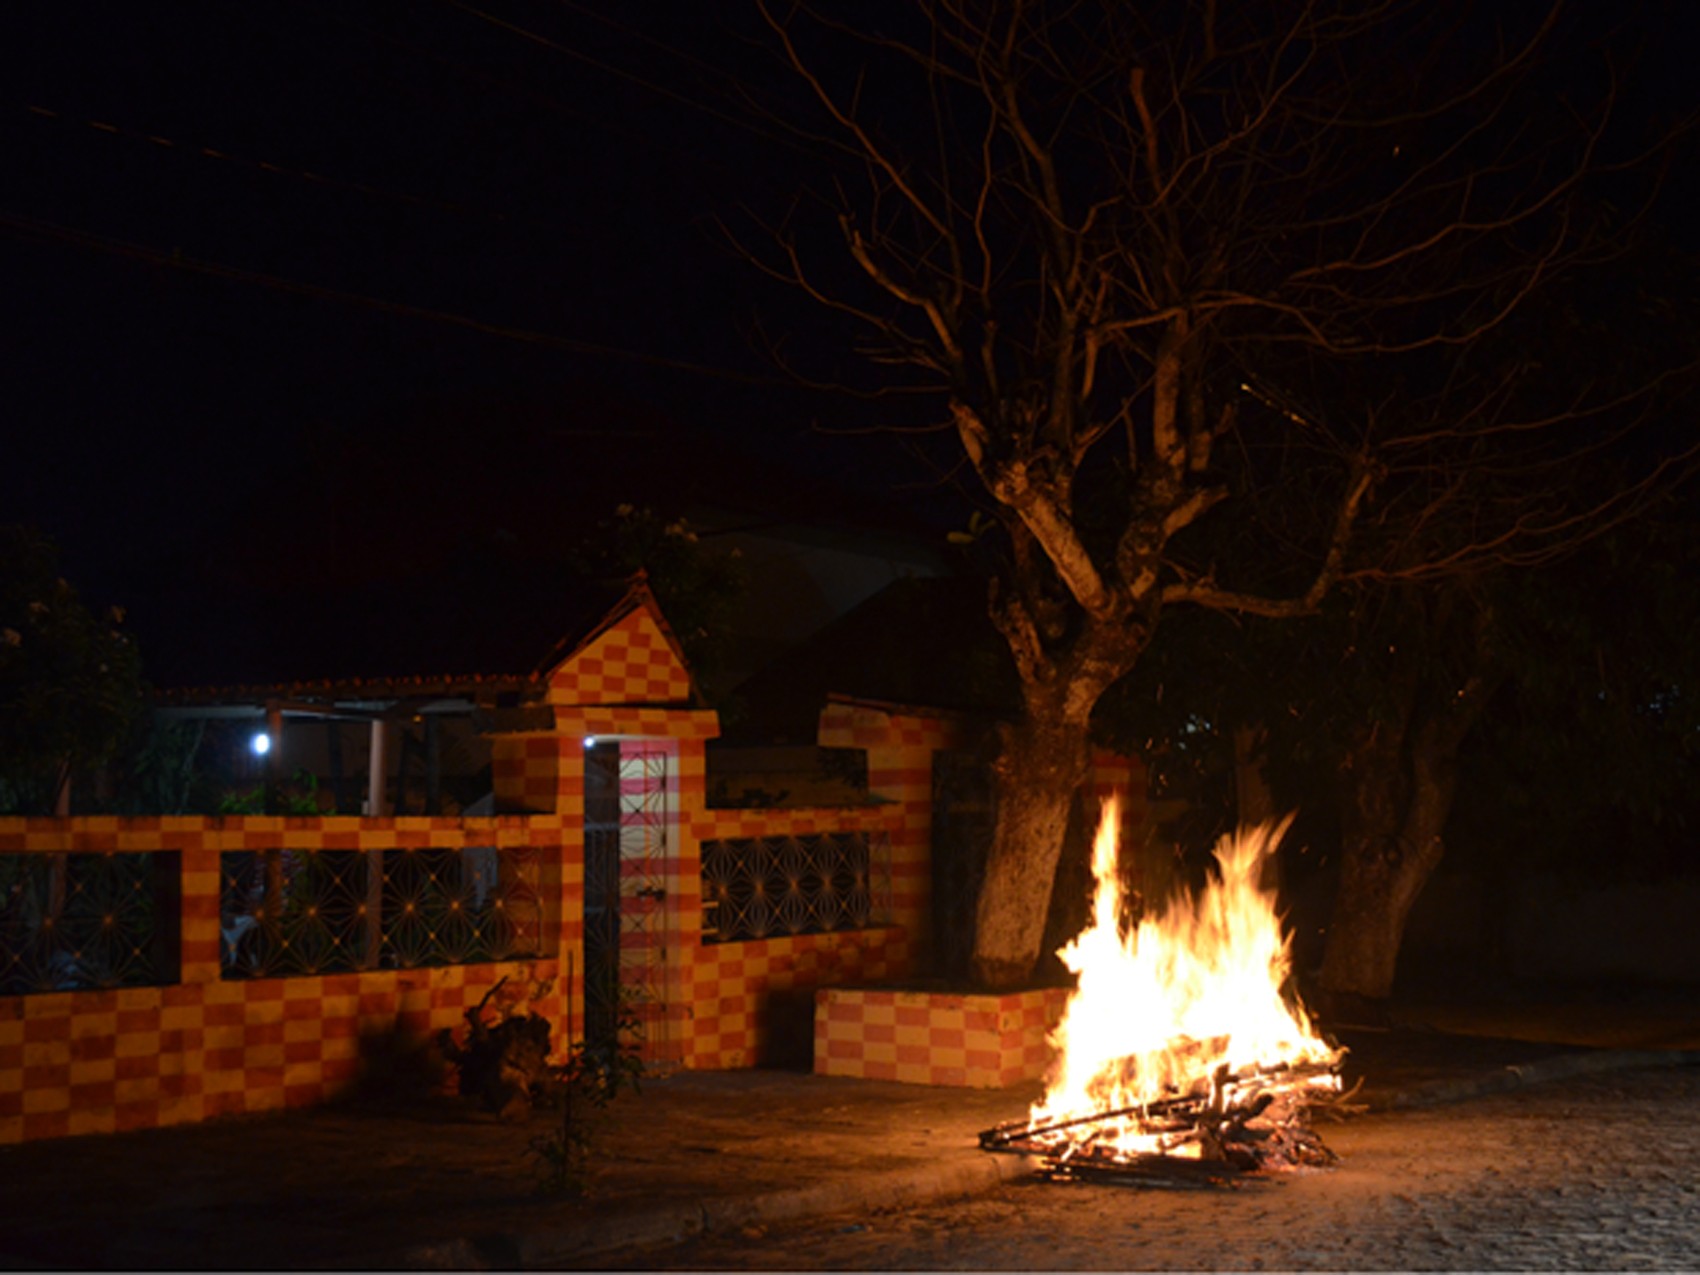 MPPB recomenda proibição de fogueiras em Campina Grande